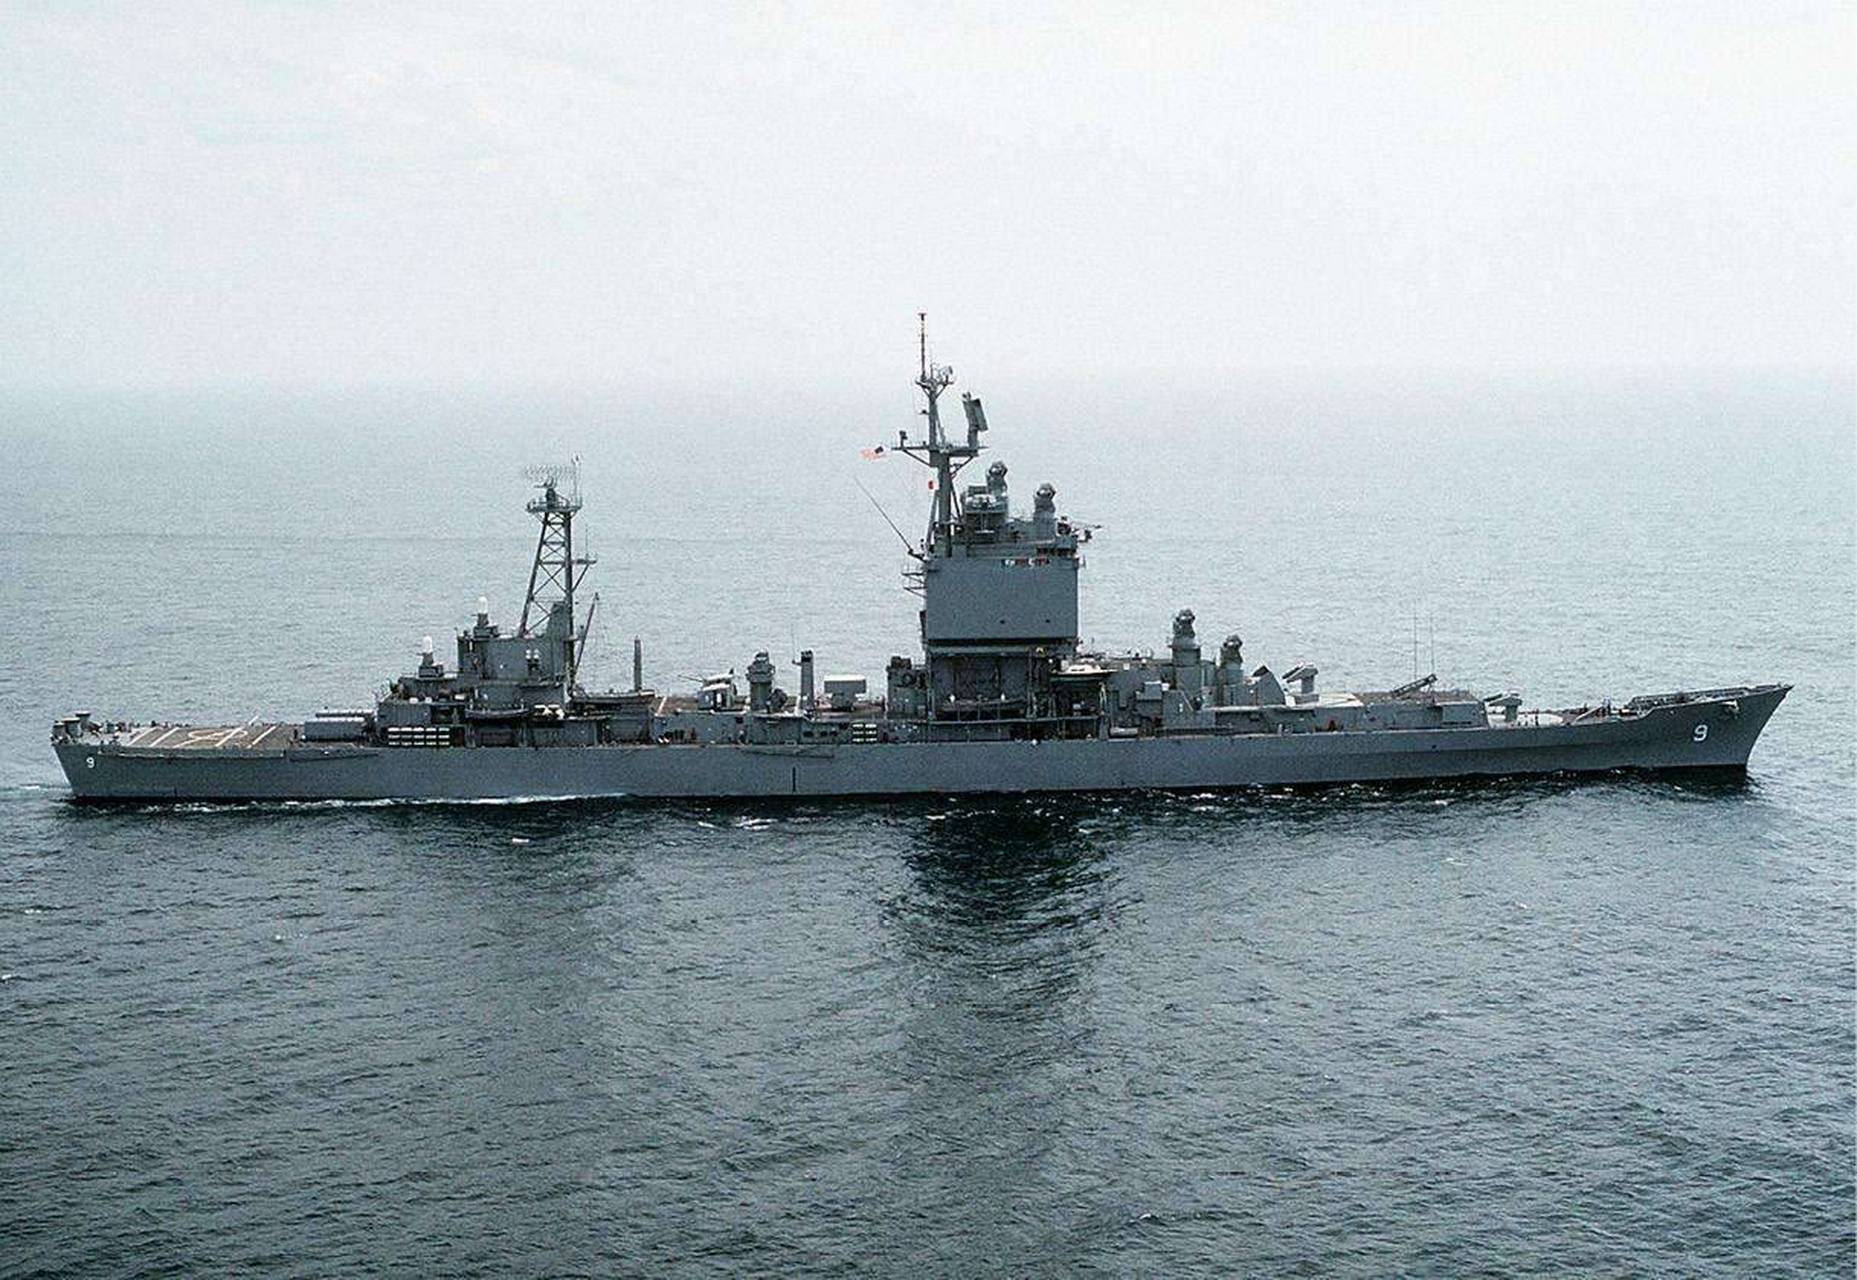 长滩号巡洋舰是美国于20世纪50年代后期建造的核动力巡洋舰,也是世